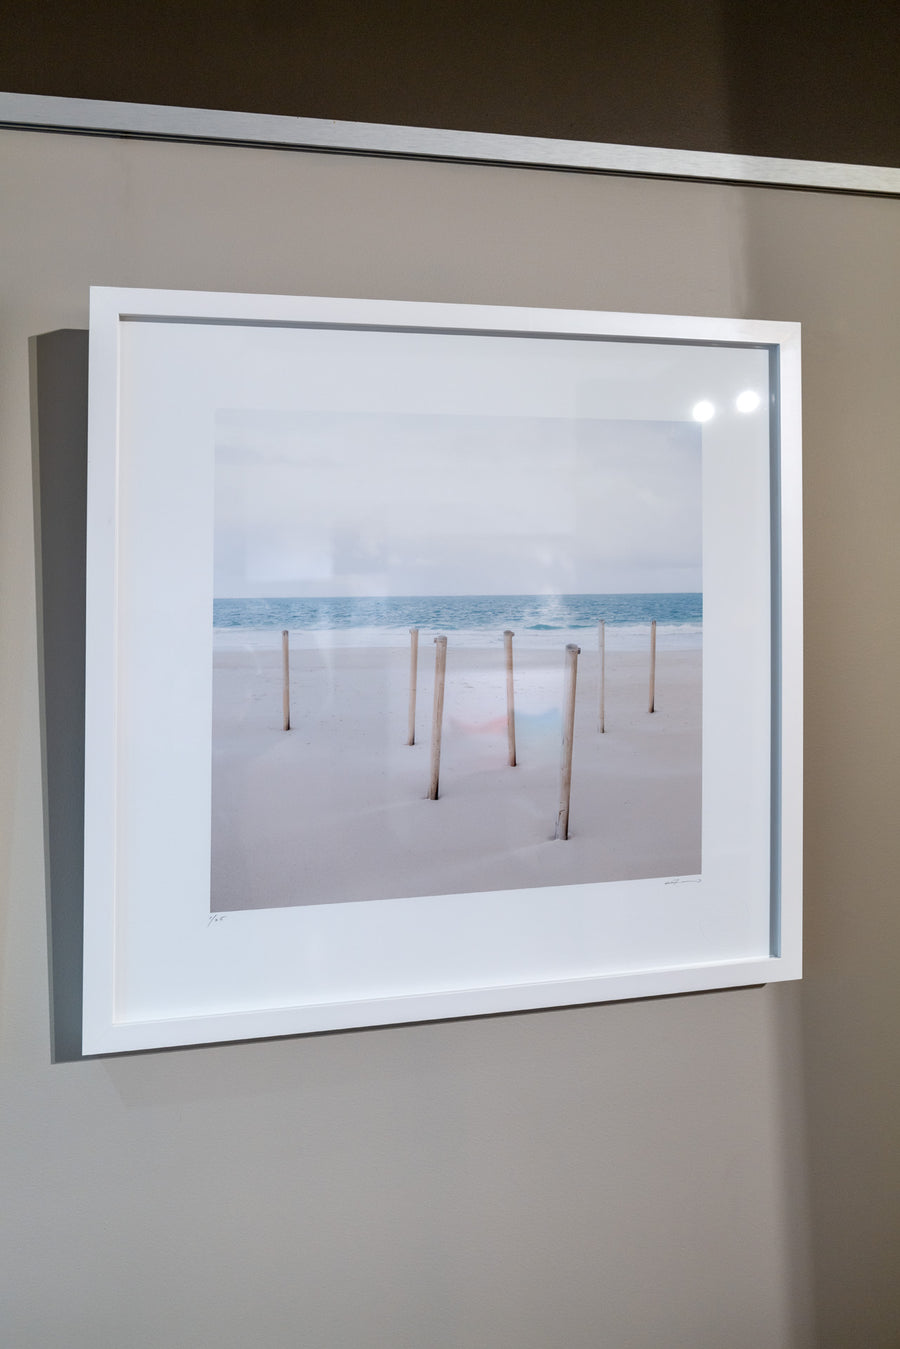 Hamlin Bay, South Western Australia, Limited Edition, 40x40cm Framed in white